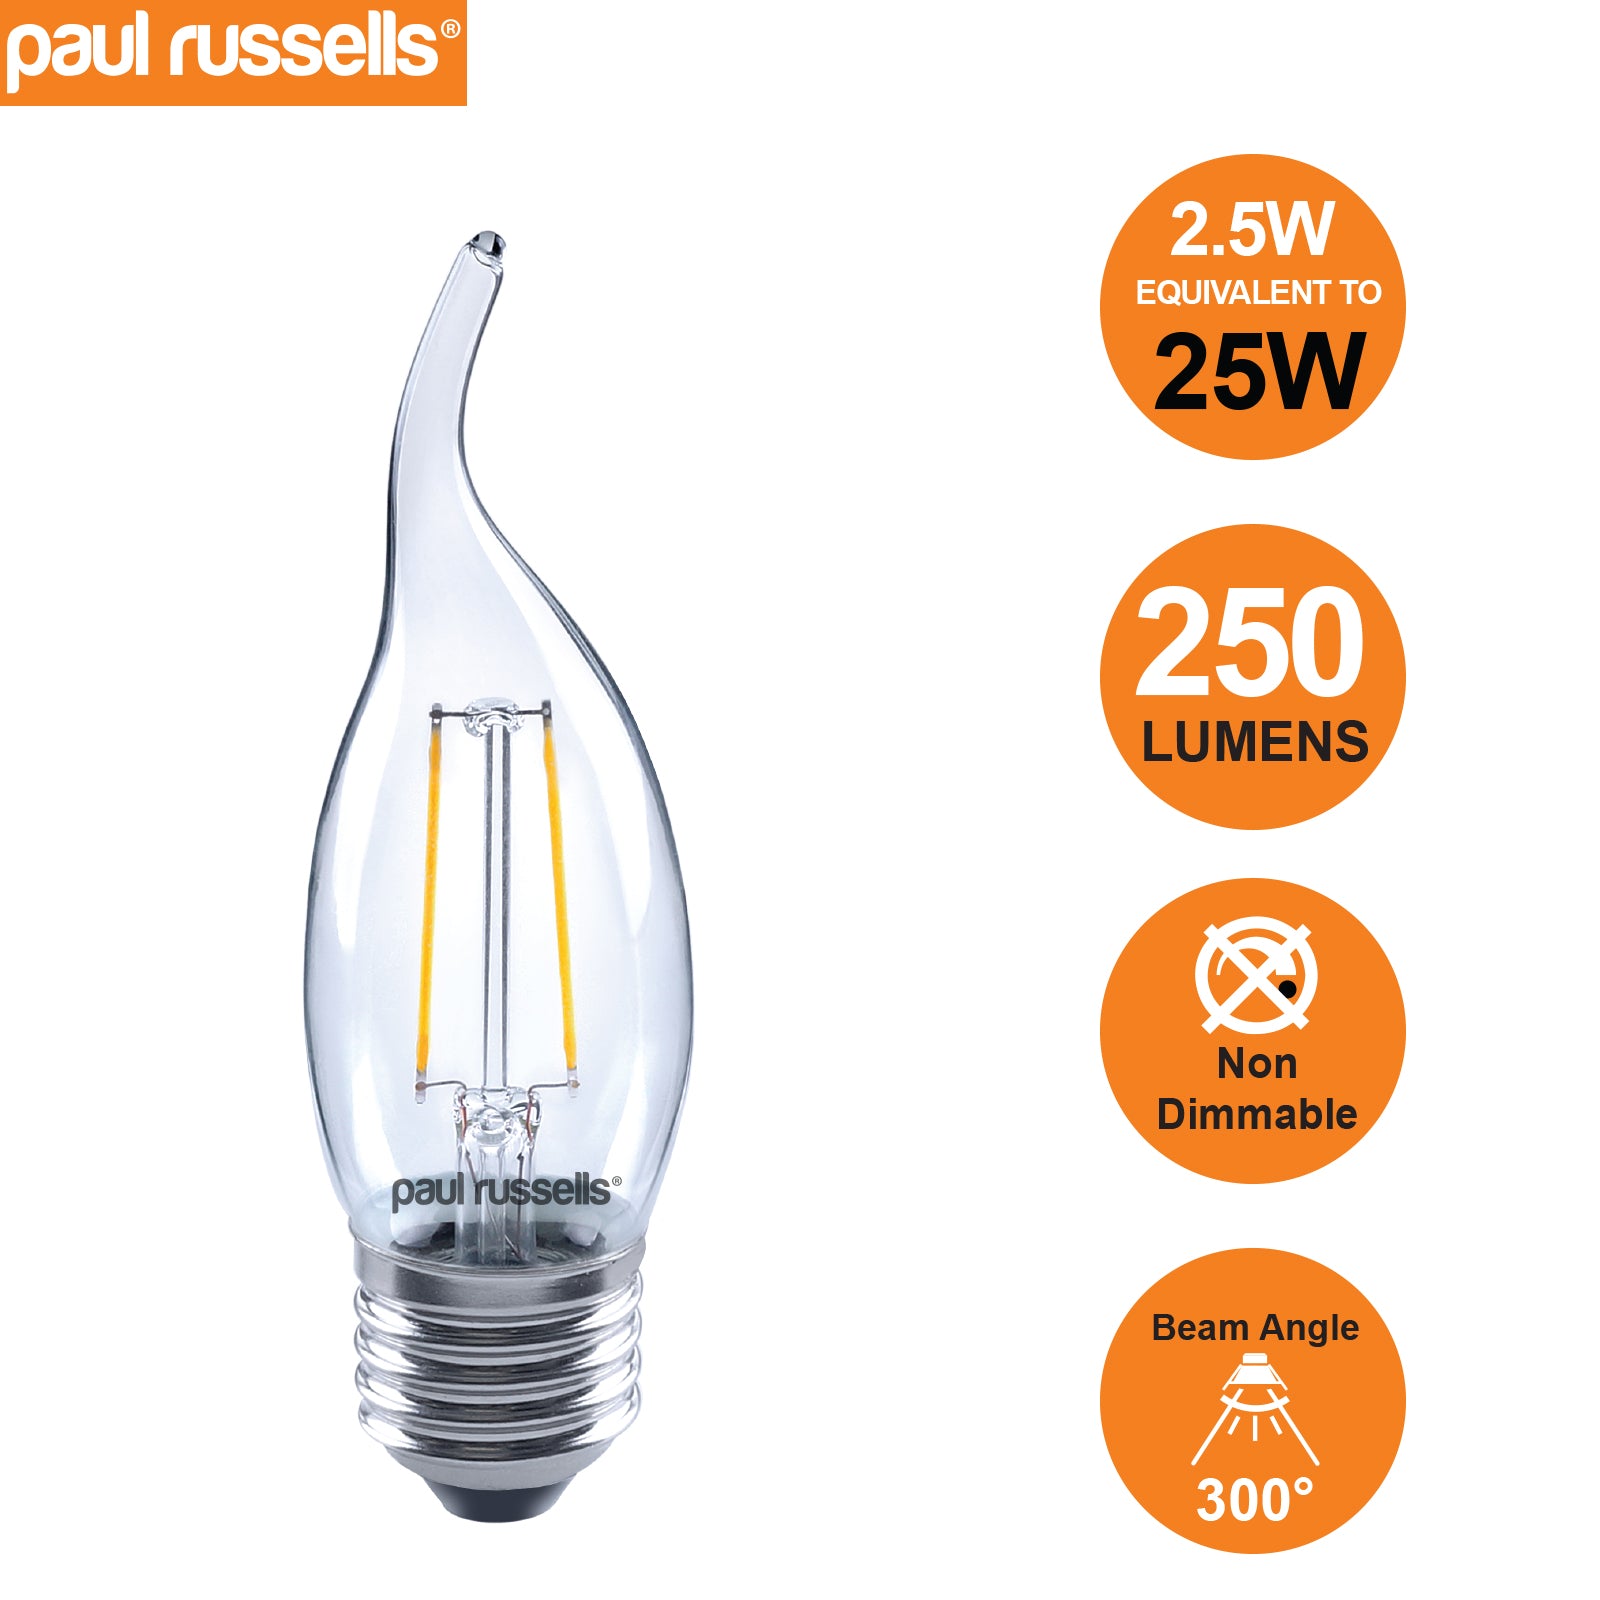 LED Filament Flame 2.5W (25w), ES/E27, 250 Lumens, Warm White(2700K), 240V